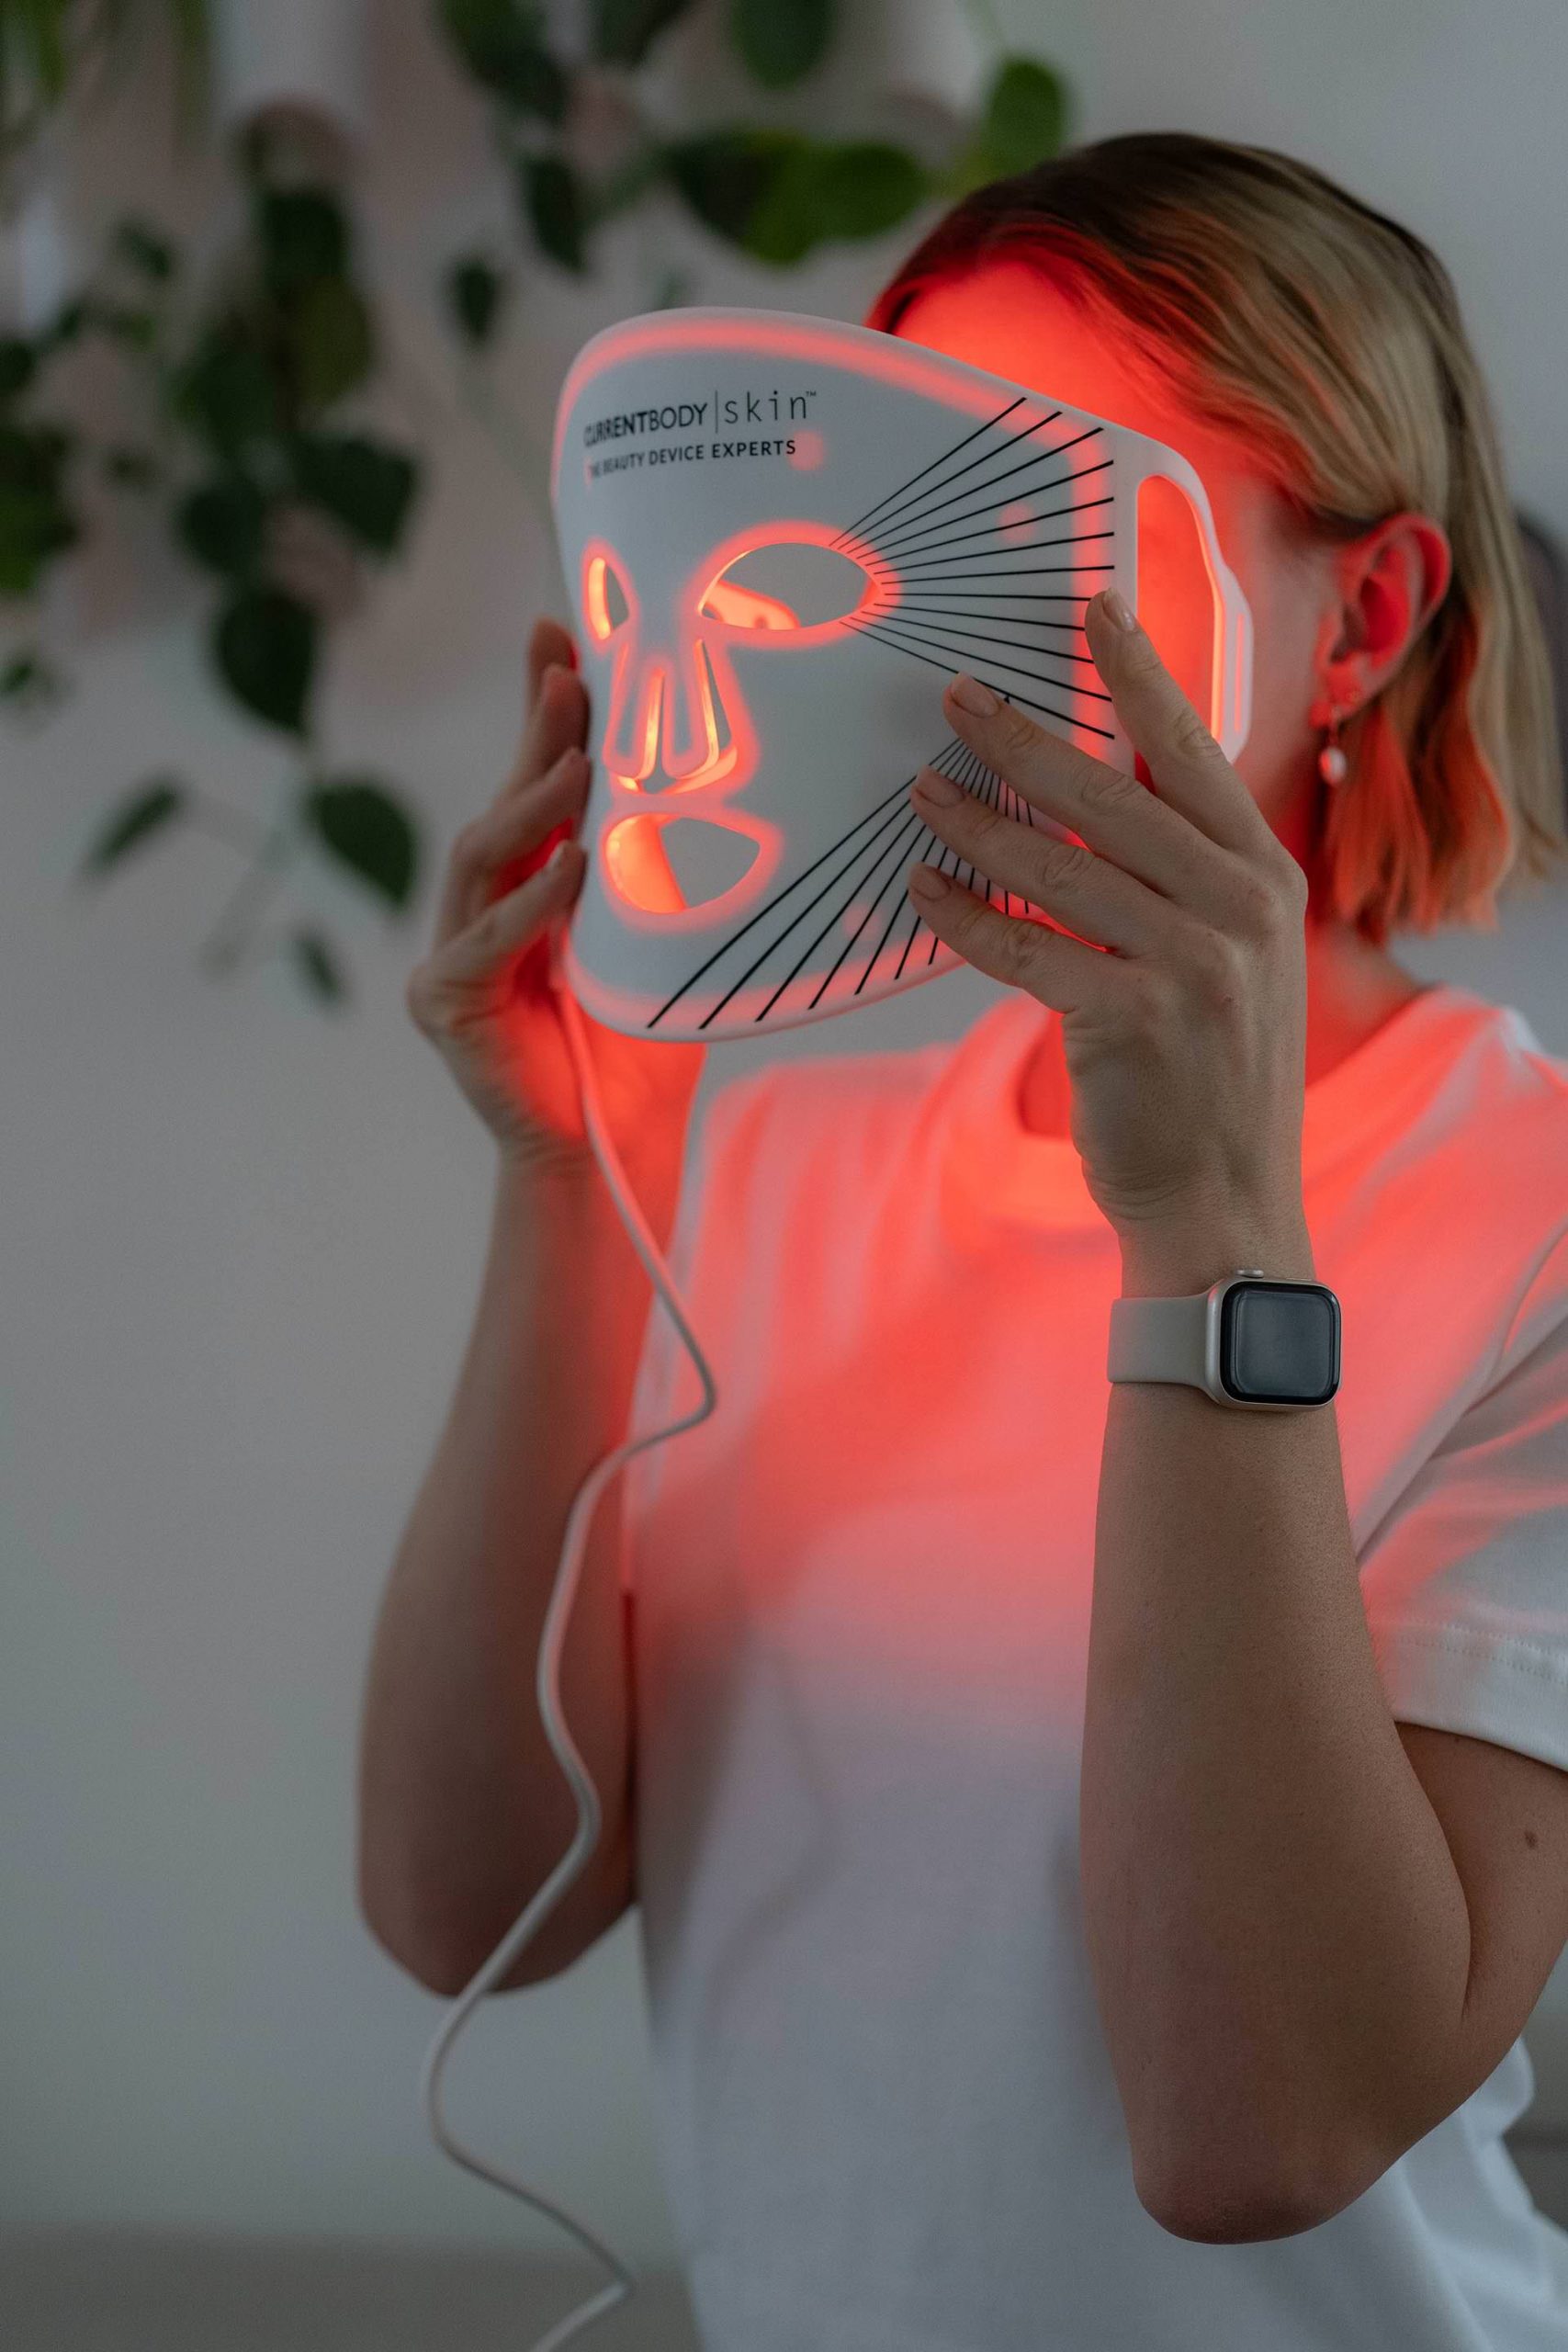 Anzeige. Die CurrentBody Skin LED Lichttherapie Maske ist mehr als nur eine gewöhnliche Maske. Sie nutzt rotes Licht zur Stimulierung der Kollagenproduktion und beruhigt Rötungen für einen gleichmäßigen Hautton.